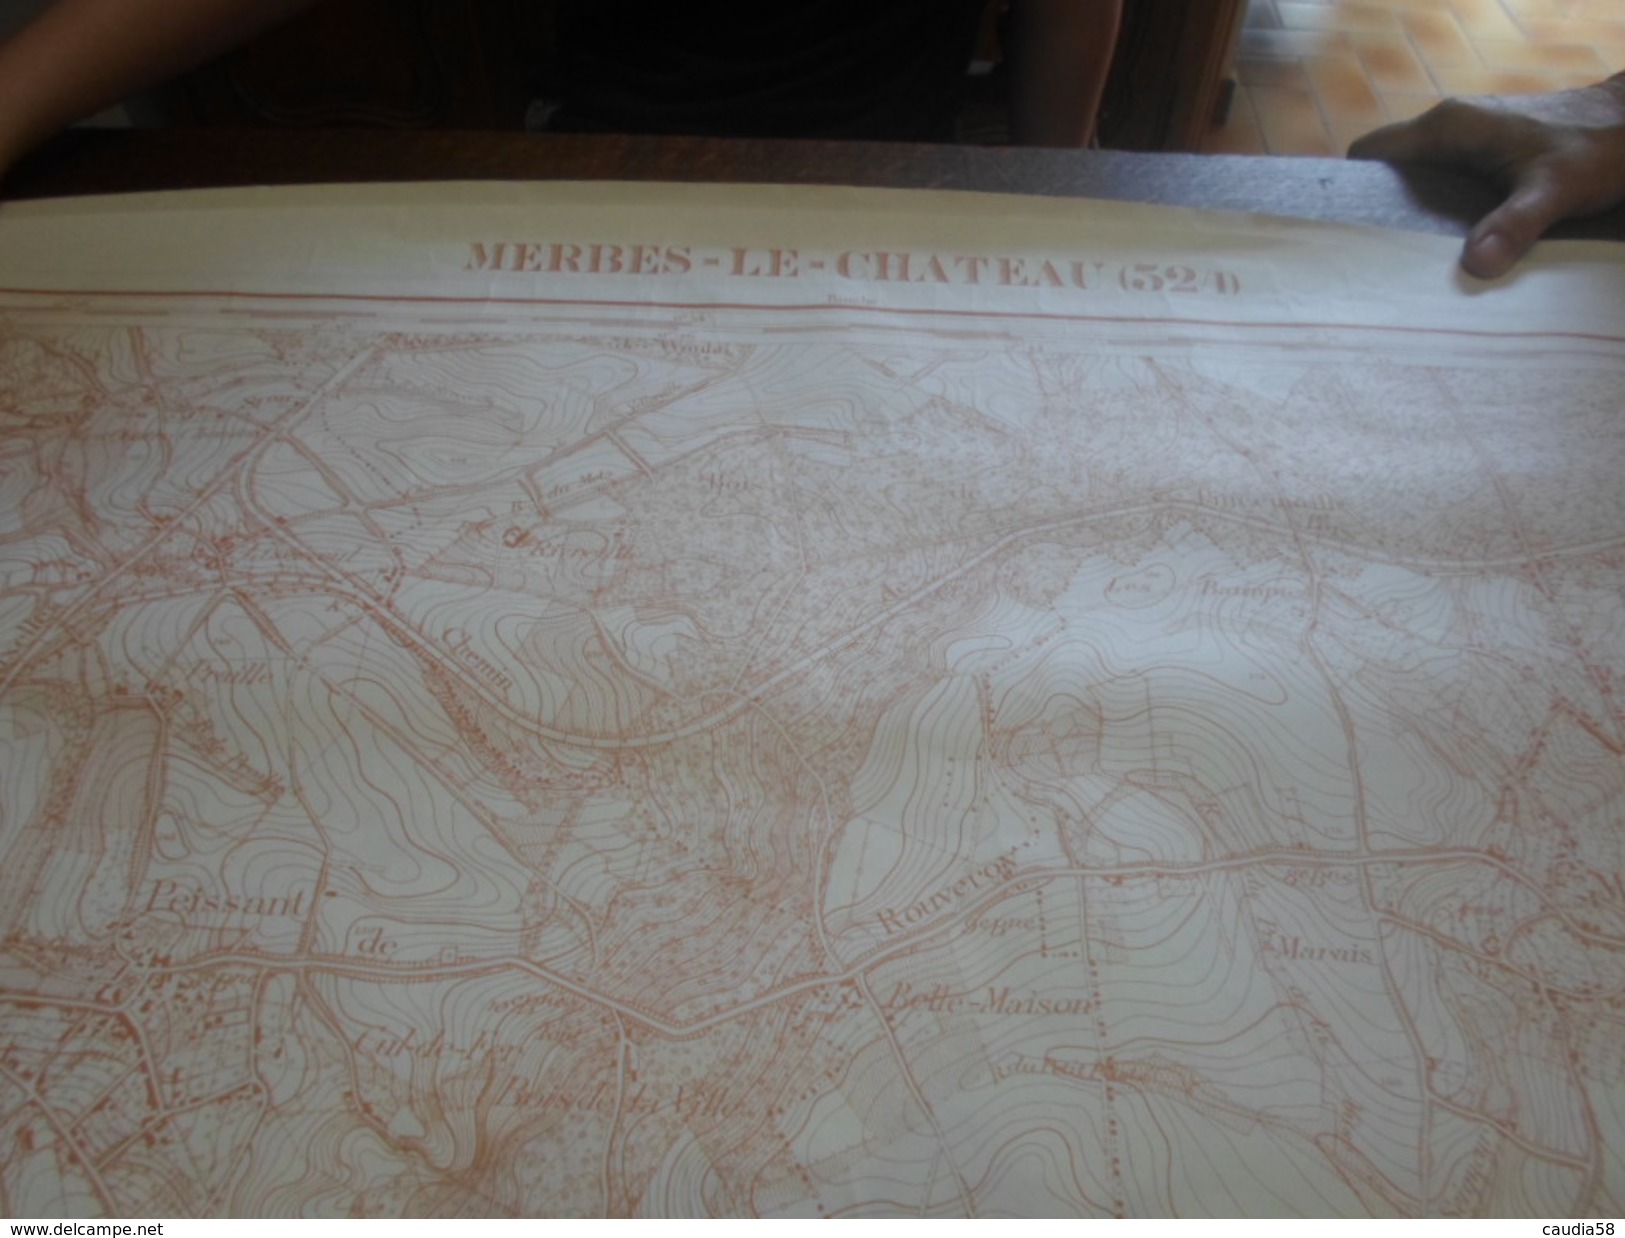 Merbes - Le - Château., Carte De De 1,13m X 89cm. - Cartes Topographiques